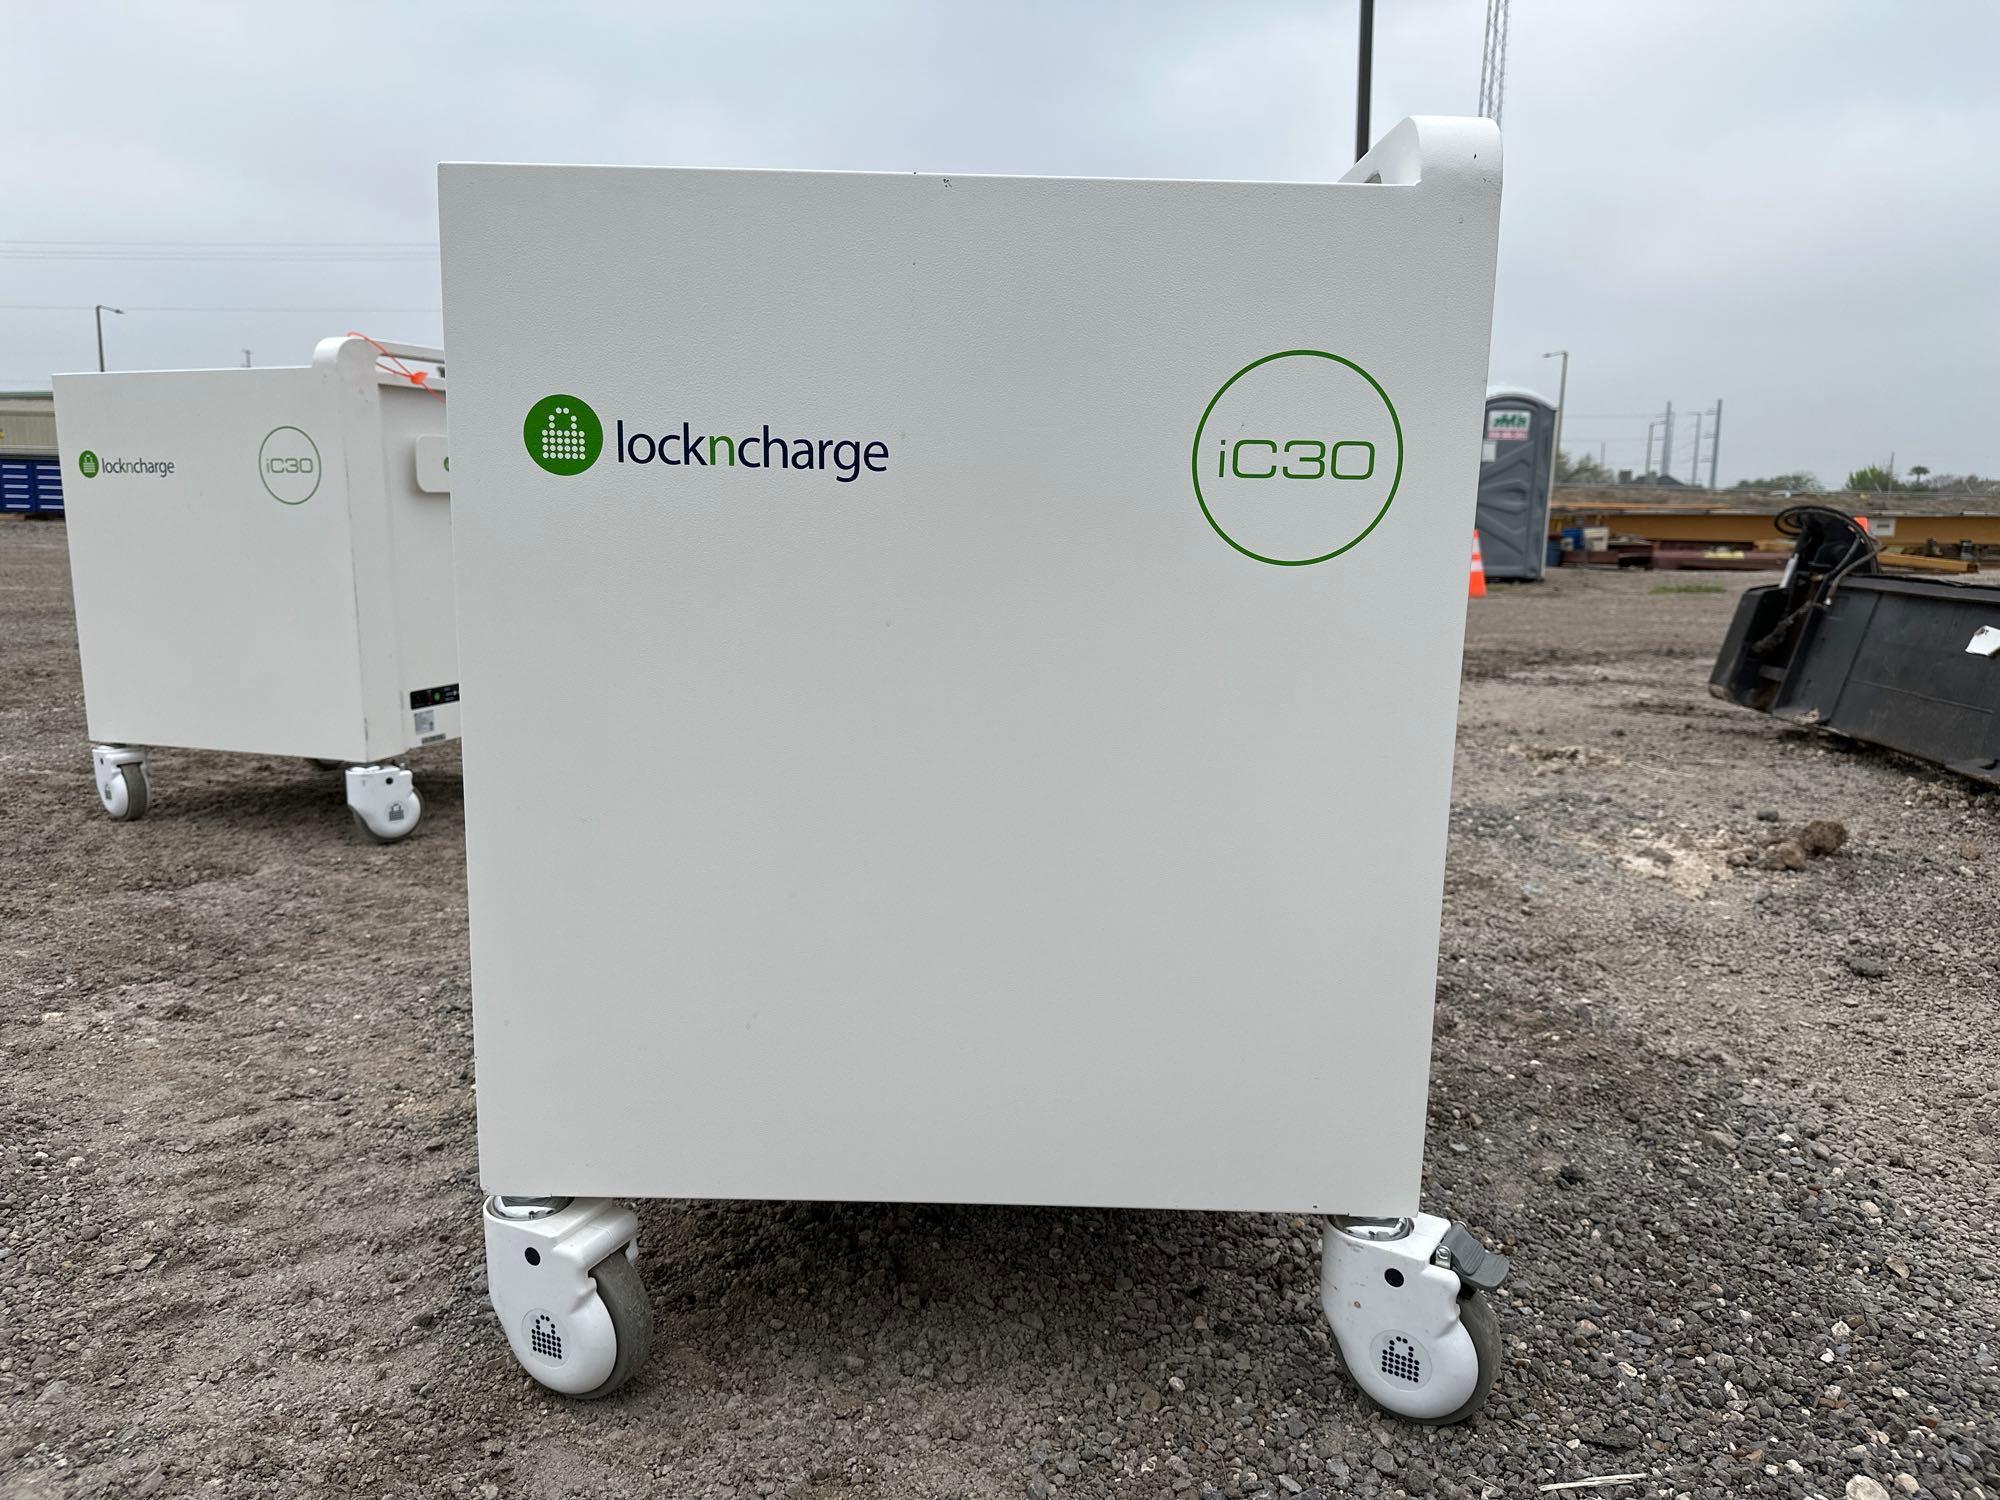 LocknCharge iC 30 MK5 30 Bay Charge Cart